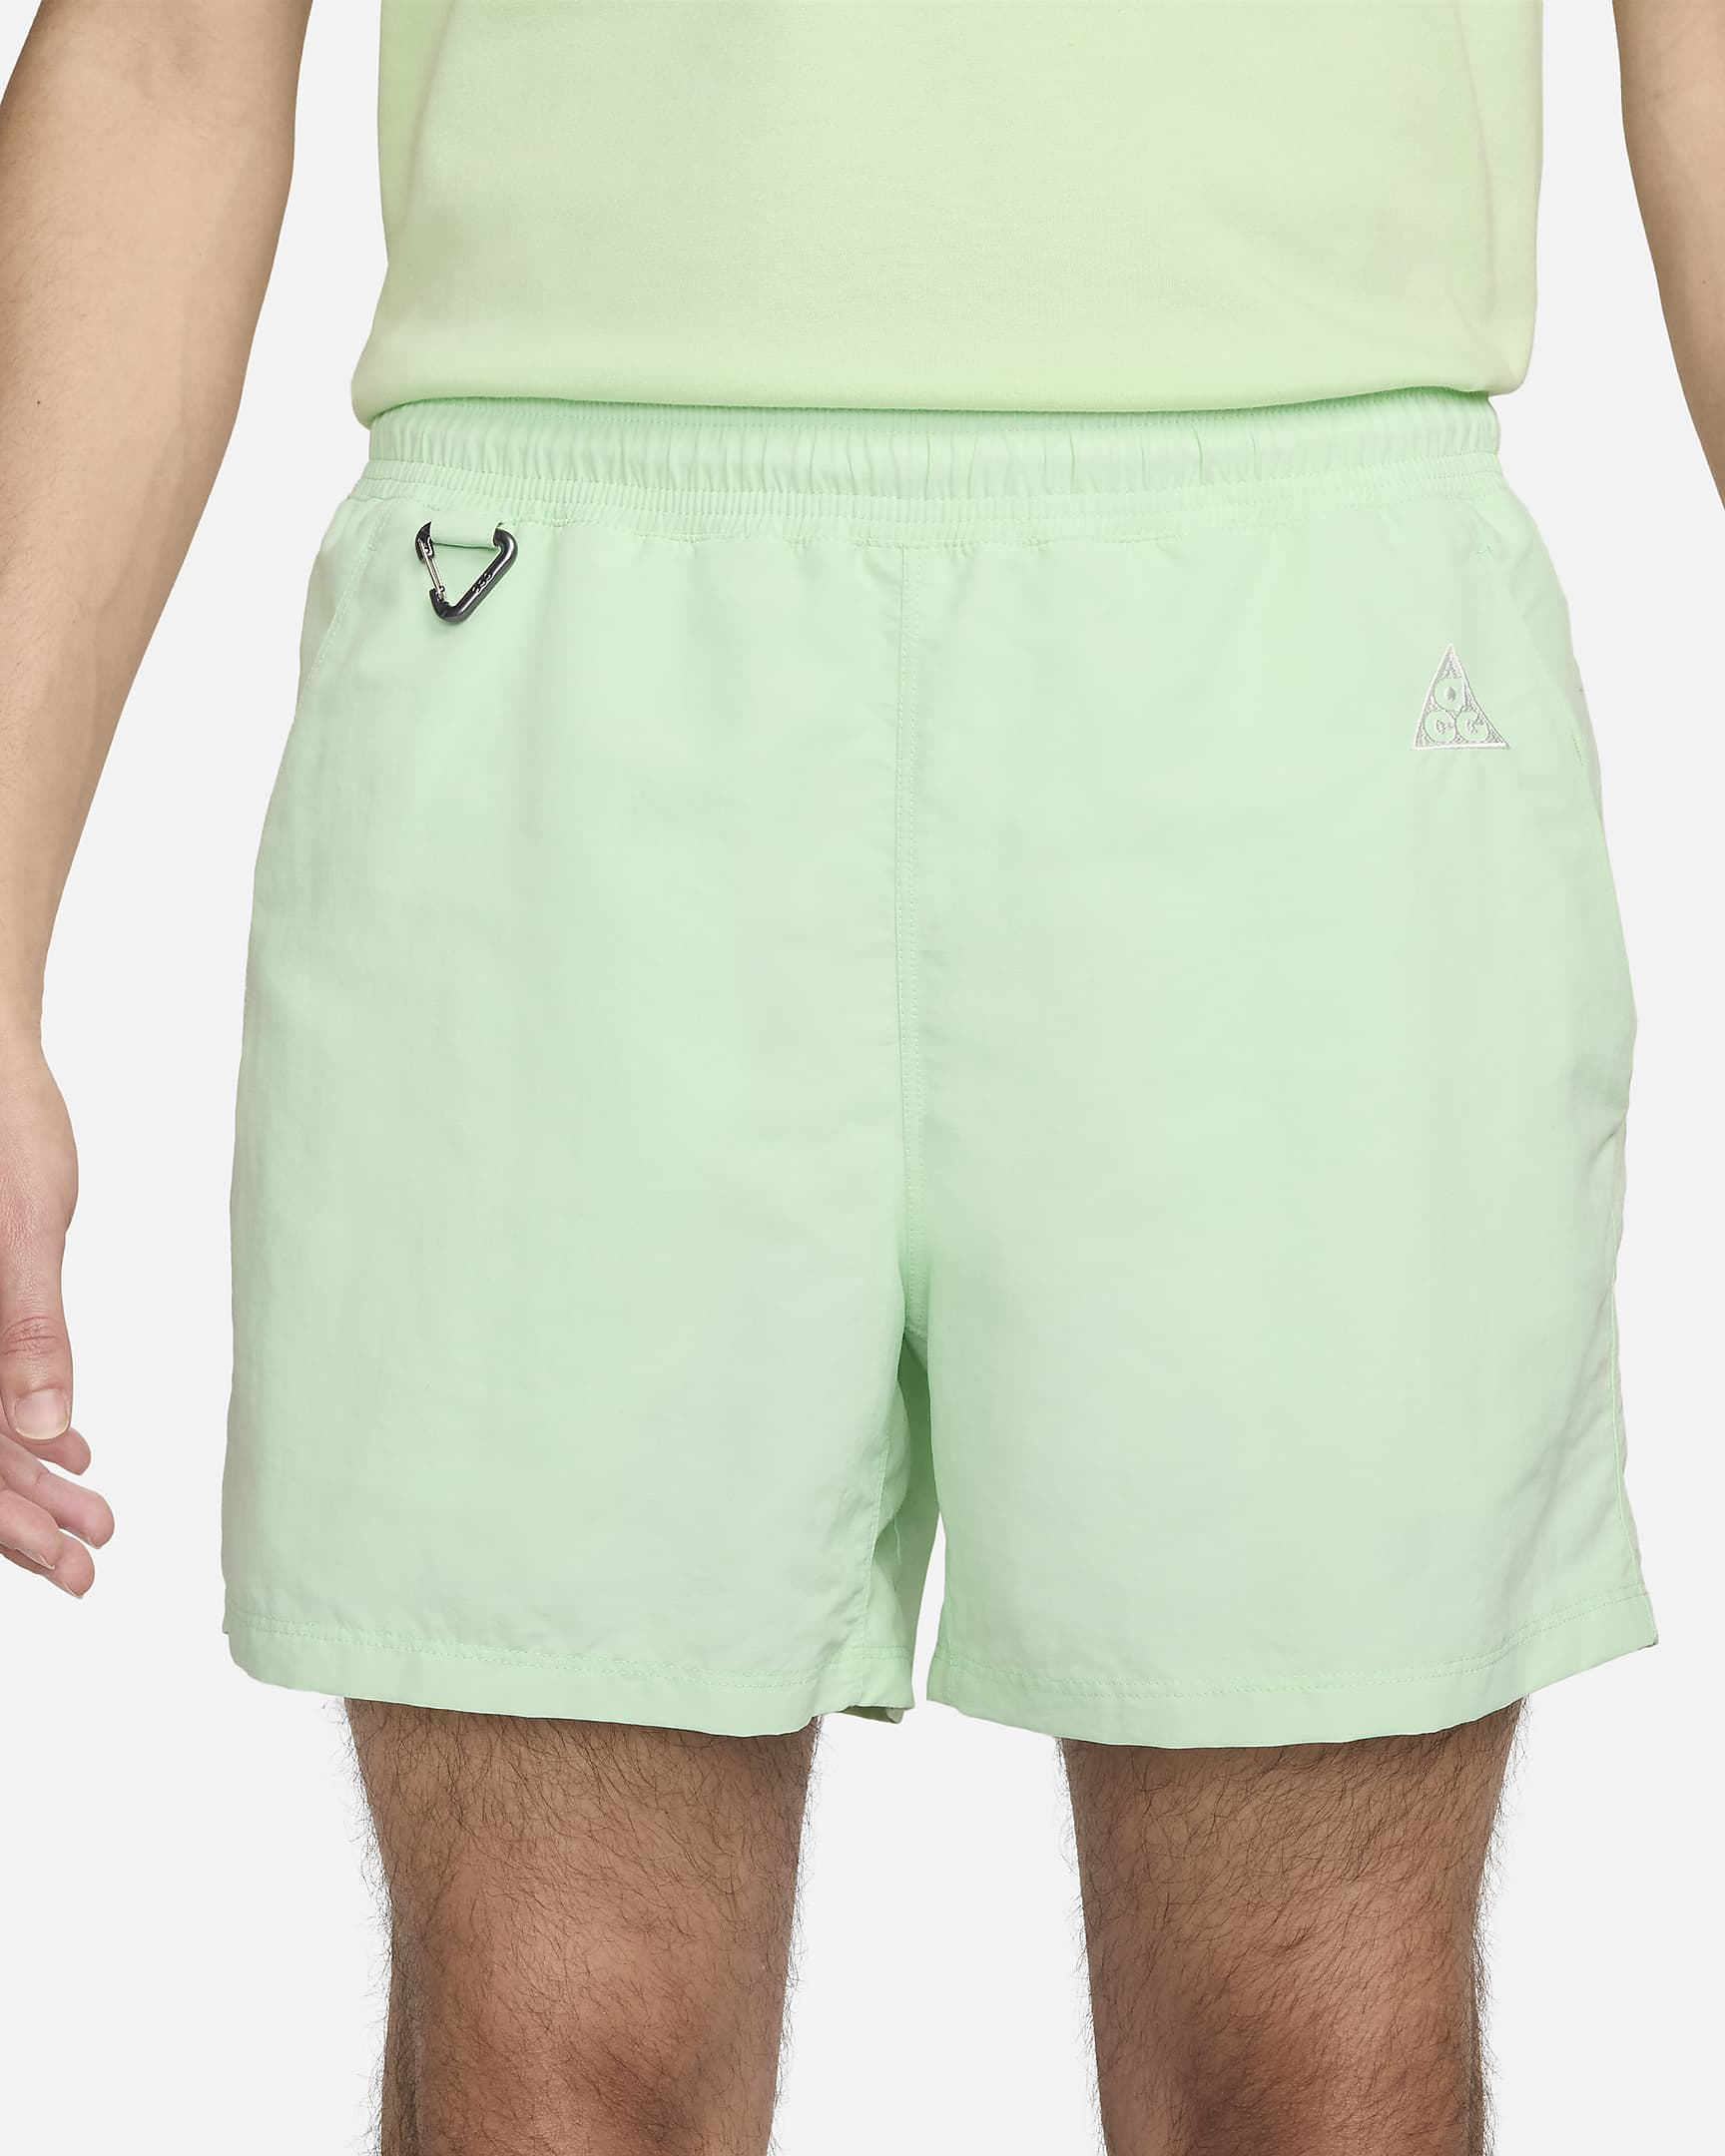 Nike ACG 'Reservoir Goat' Men's Shorts - Vapour Green/Summit White